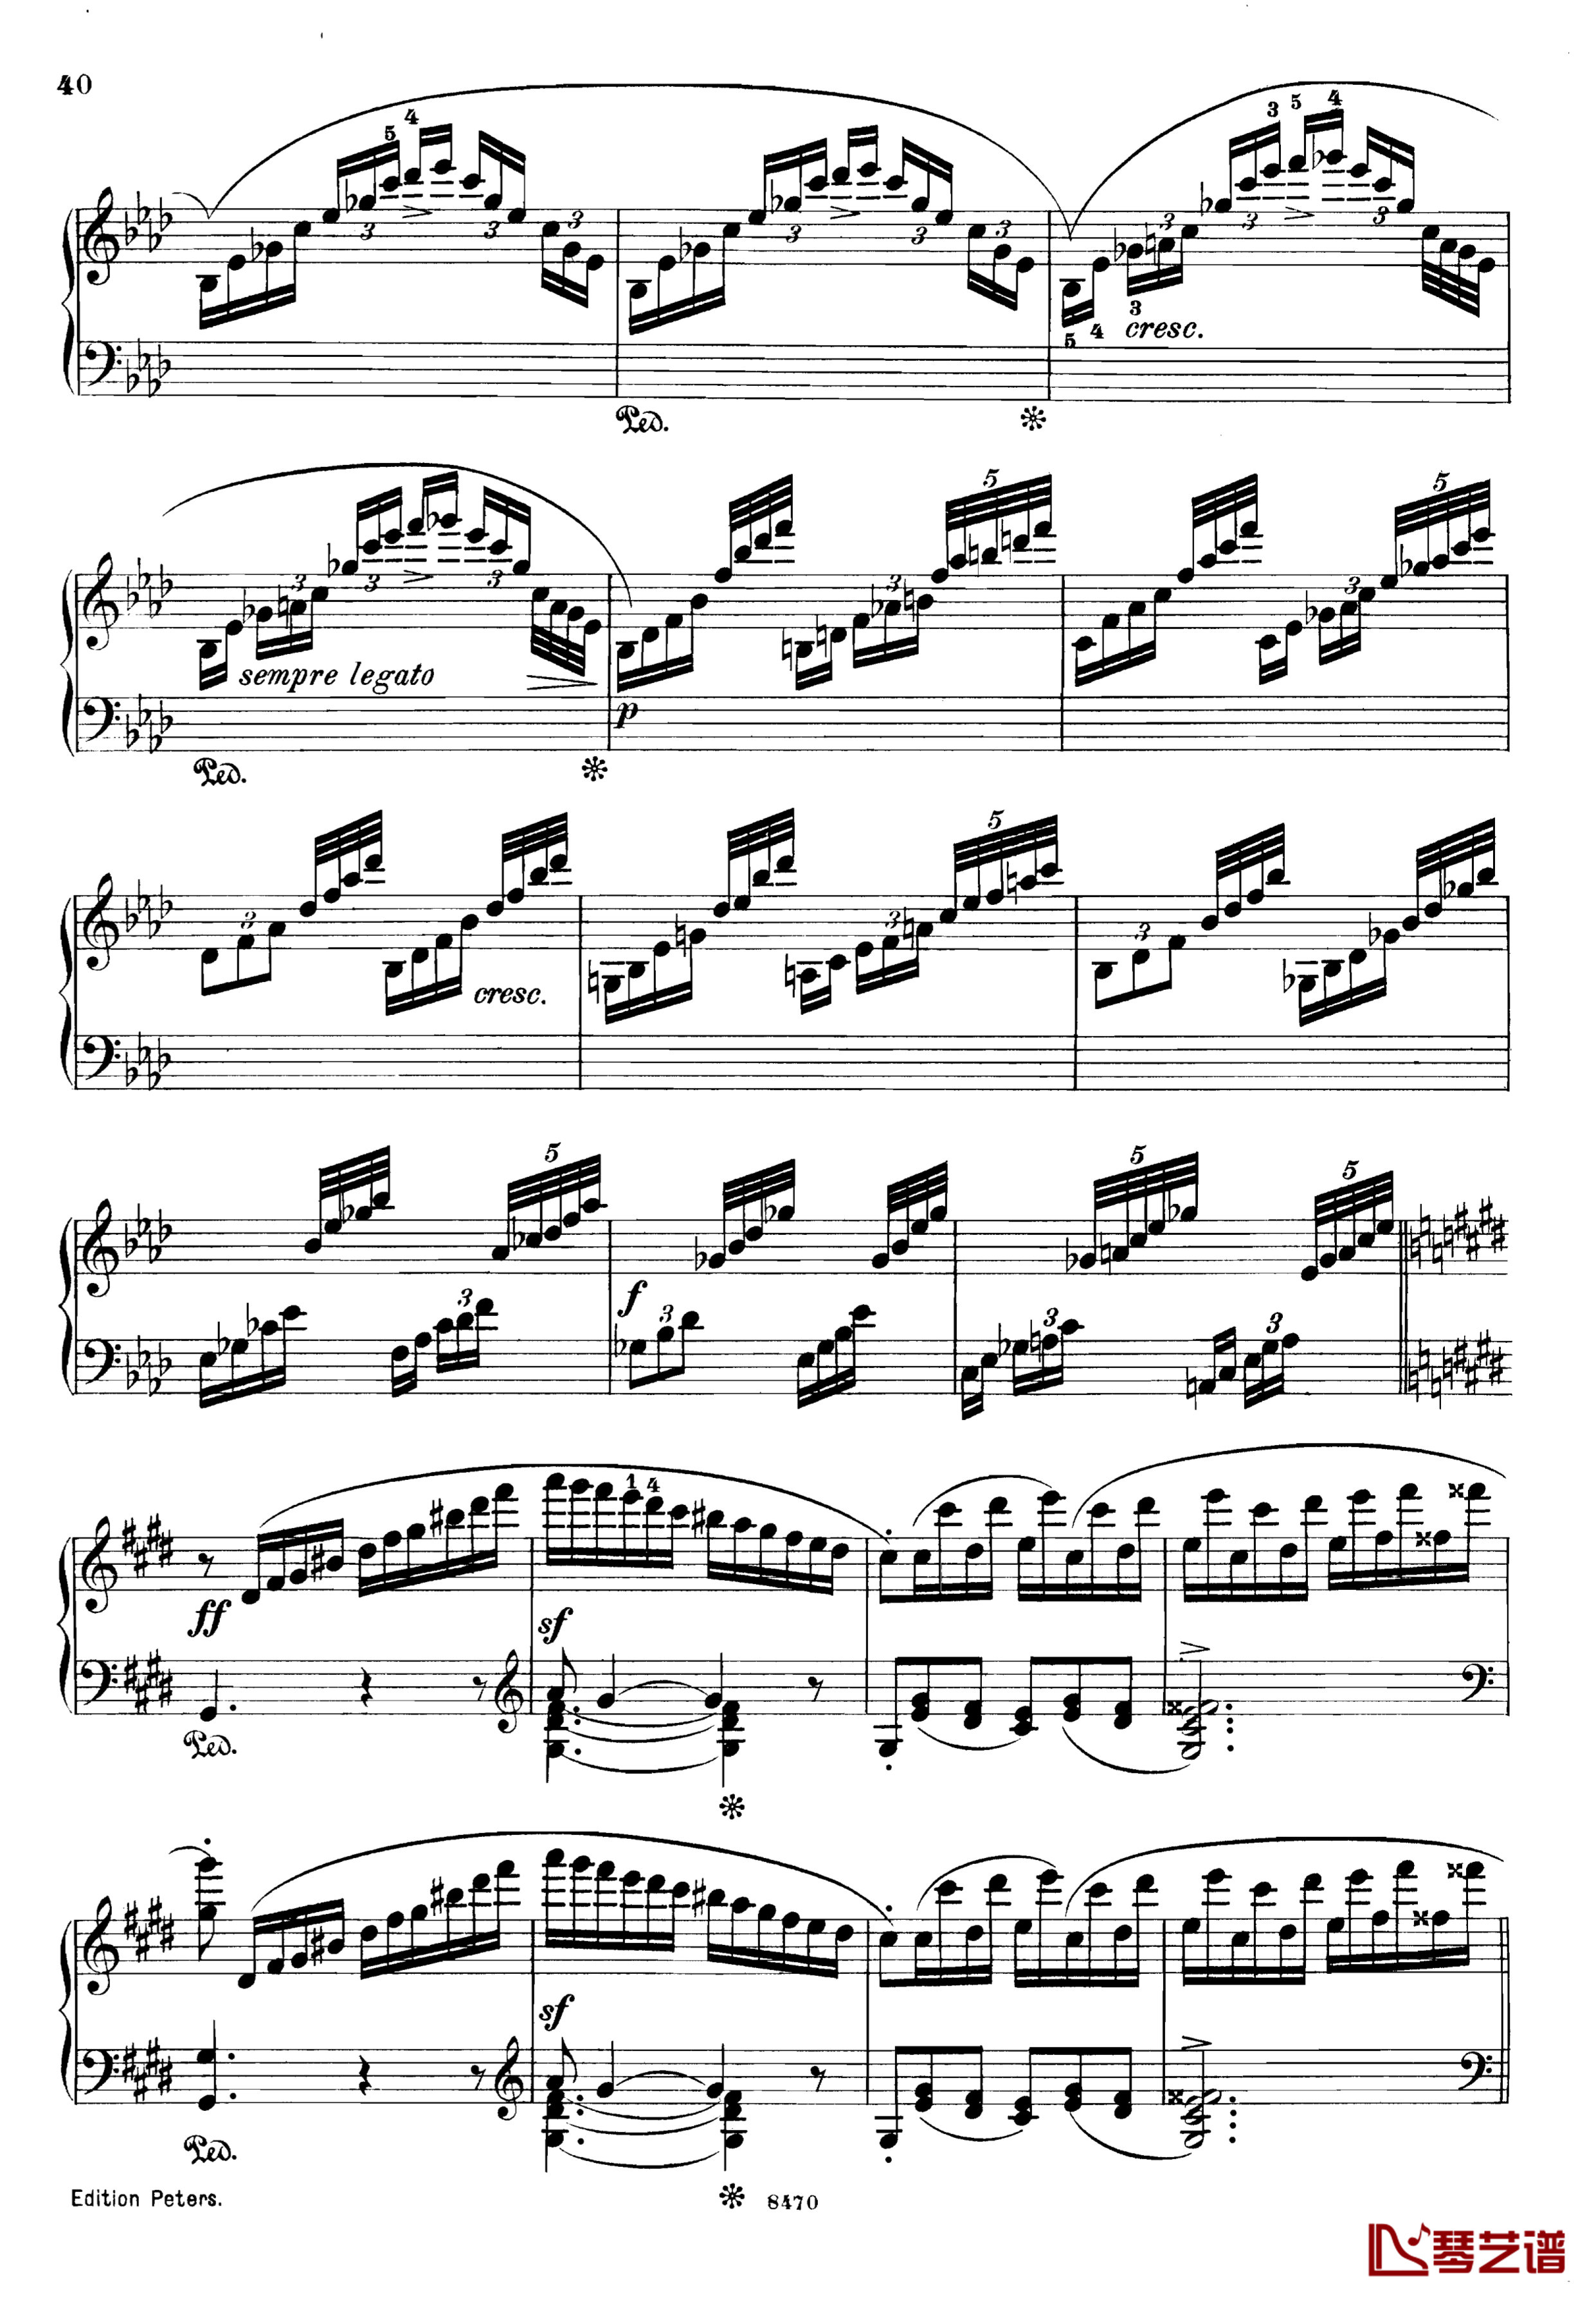 升c小调第三钢琴协奏曲Op.55钢琴谱-克里斯蒂安-里斯40